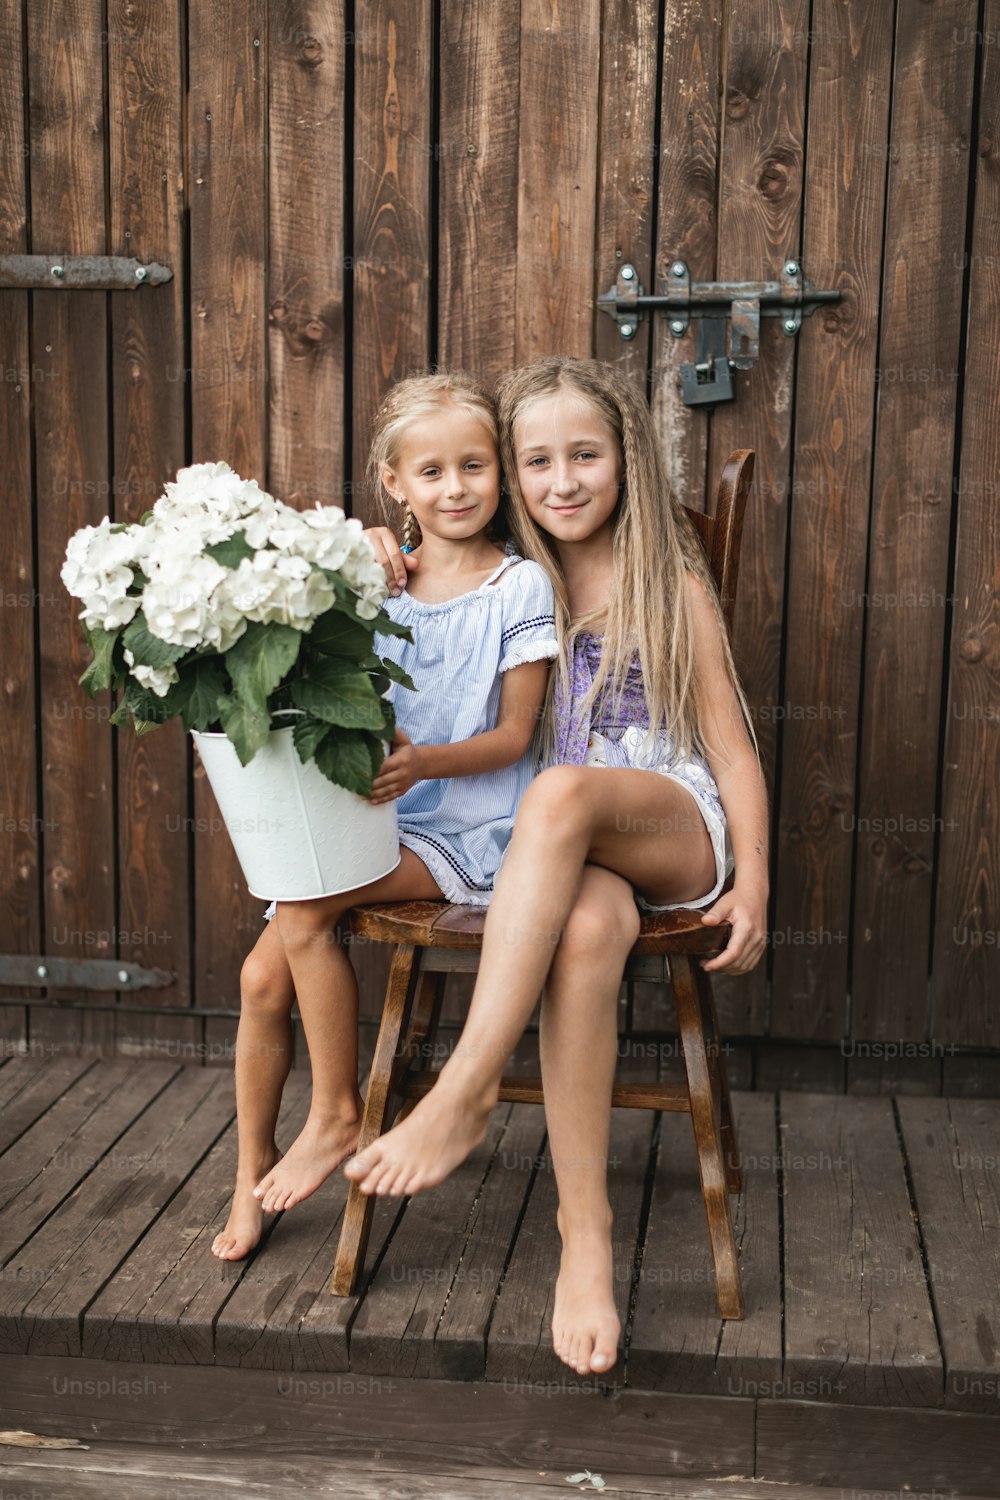 Duas meninas de cabelos loiros felizes, irmãs ou amigas, sentadas juntas na cadeira de madeira perto do velho celeiro de madeira ao ar livre, e segurando buquê de flores, hortênsia branca no balde.